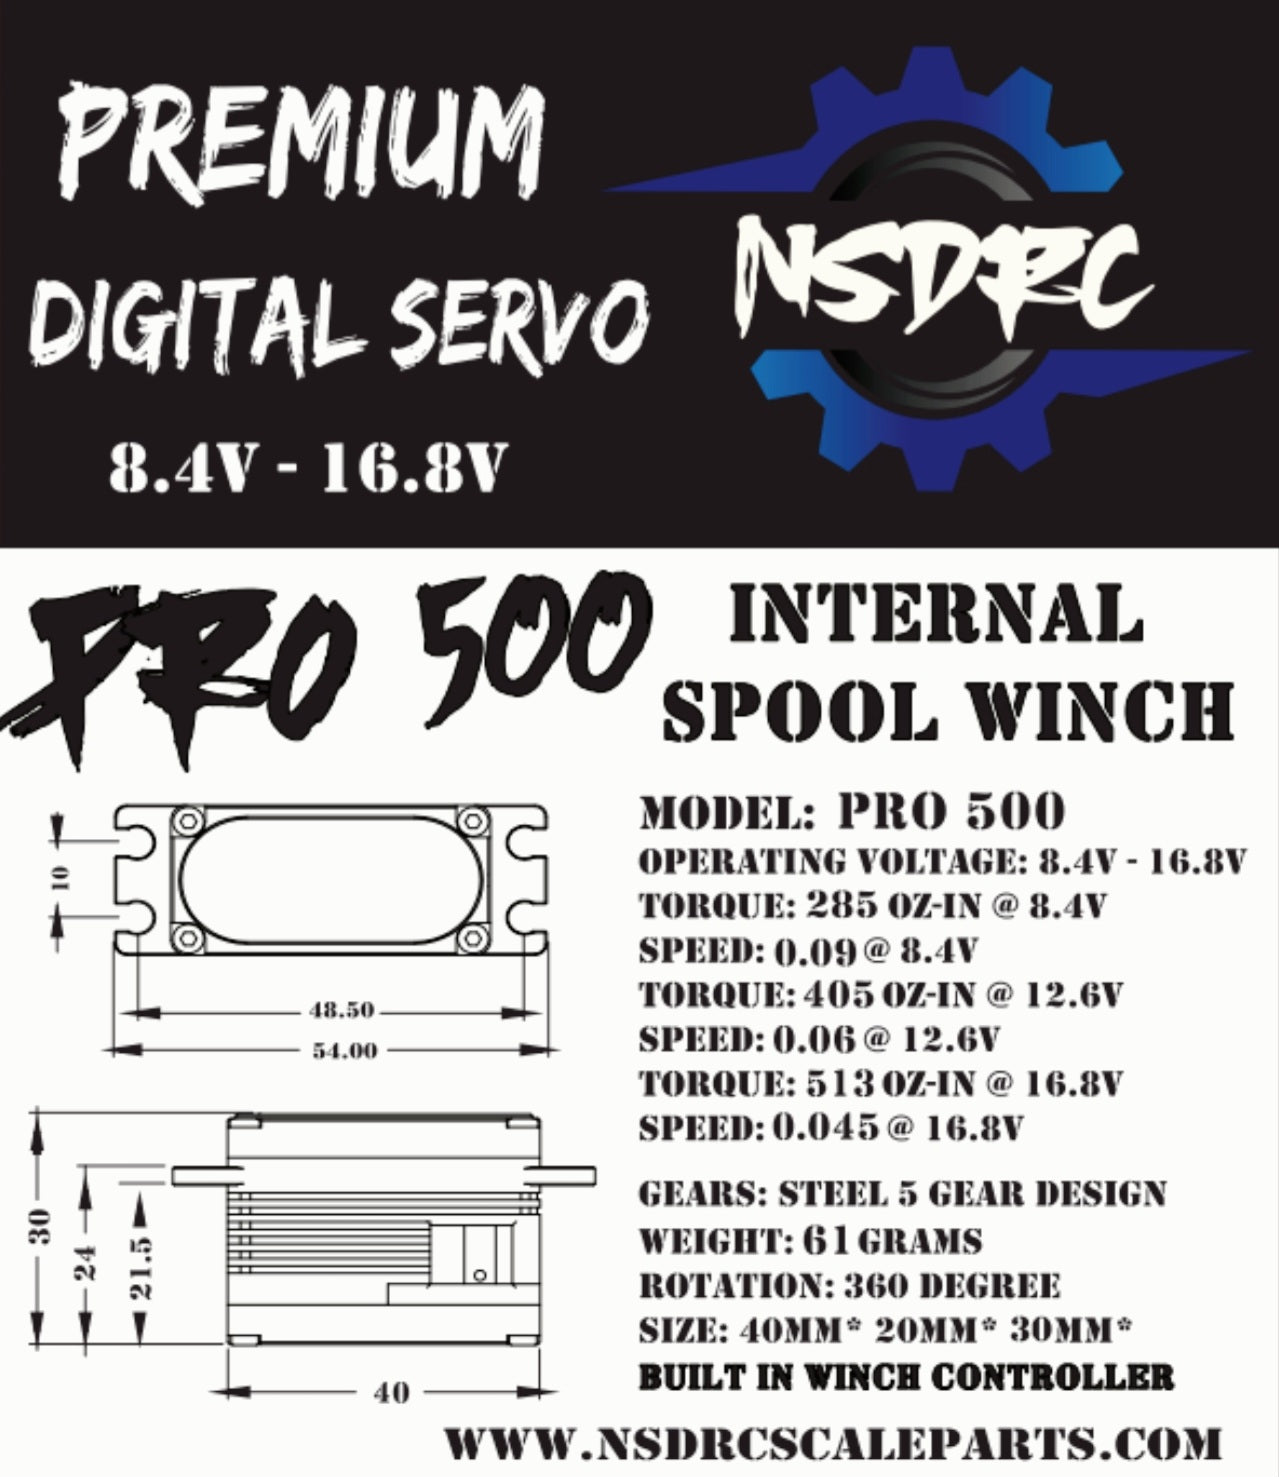 PRO 500 Internal Spool Winch